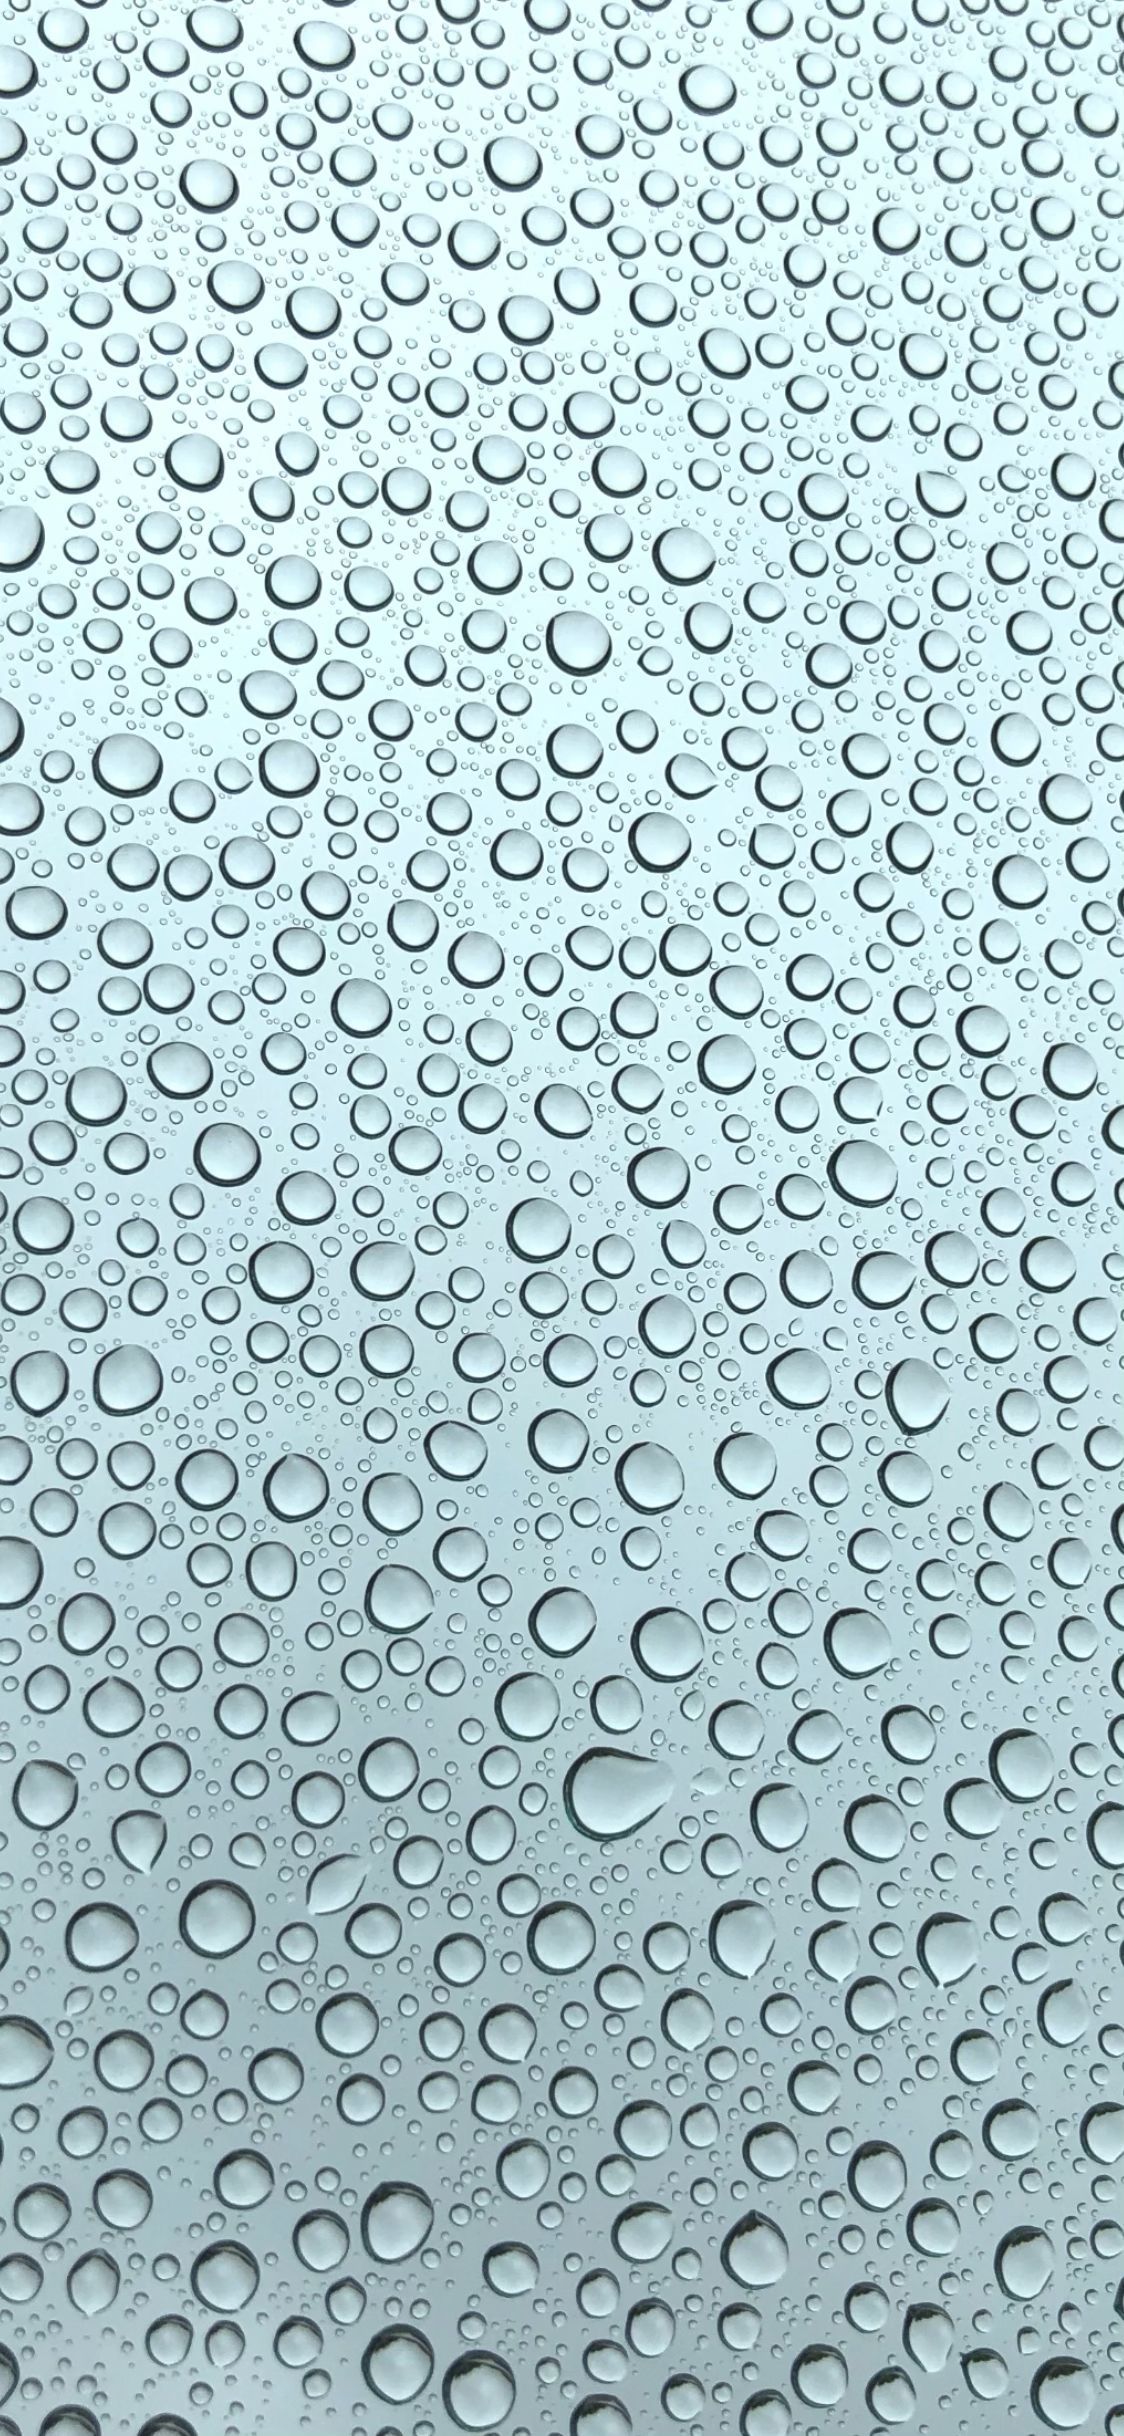 Water Droplet Wallpaper. Water .com